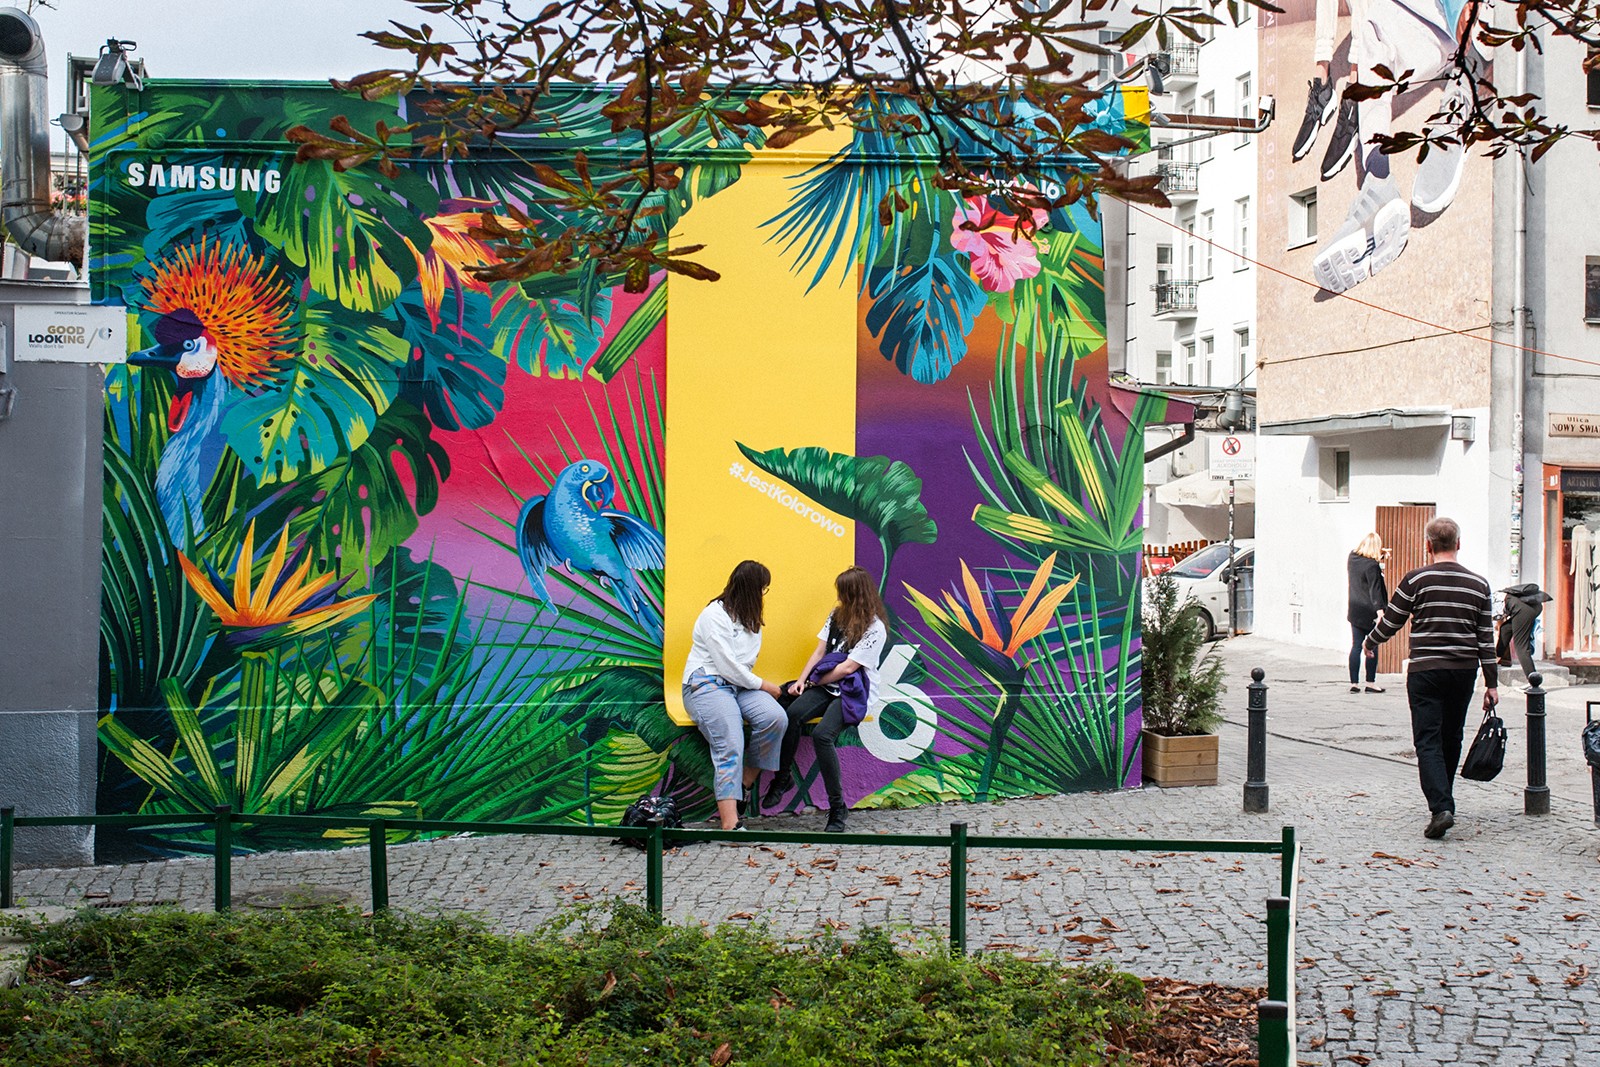 Mural reklamowy dla marki Samsung promujący telefon Galaxy J6 w Warszawie na pawilonach.jpg | Galaxy J6 | Portfolio